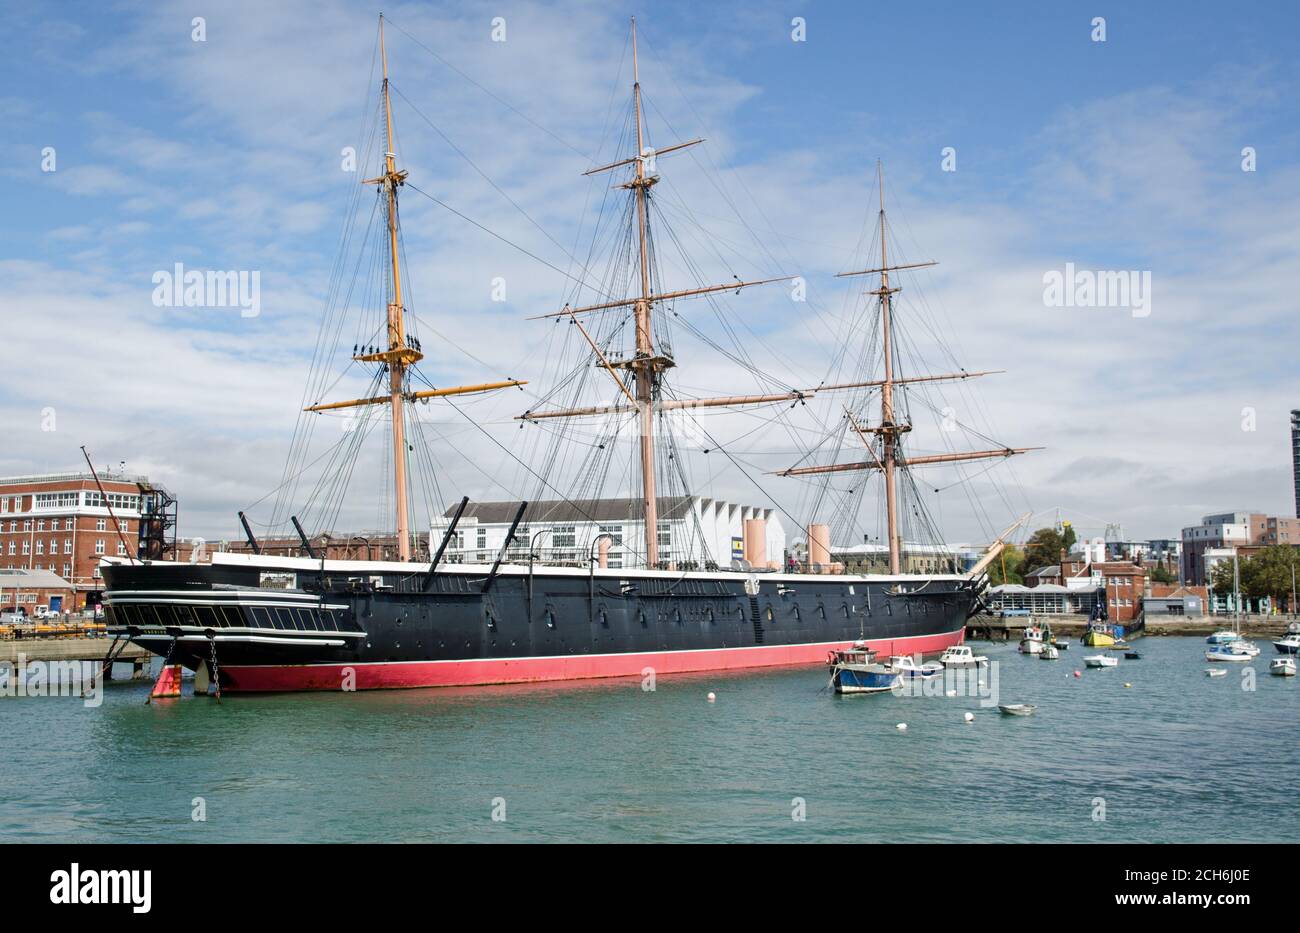 Portsmouth, Großbritannien - 8. September 2020: Die historische HMS Warrior - Großbritanniens erstes eisernes Schlachtschiff - vom Meer aus gesehen in Portsmouth Harbour, Ham Stockfoto